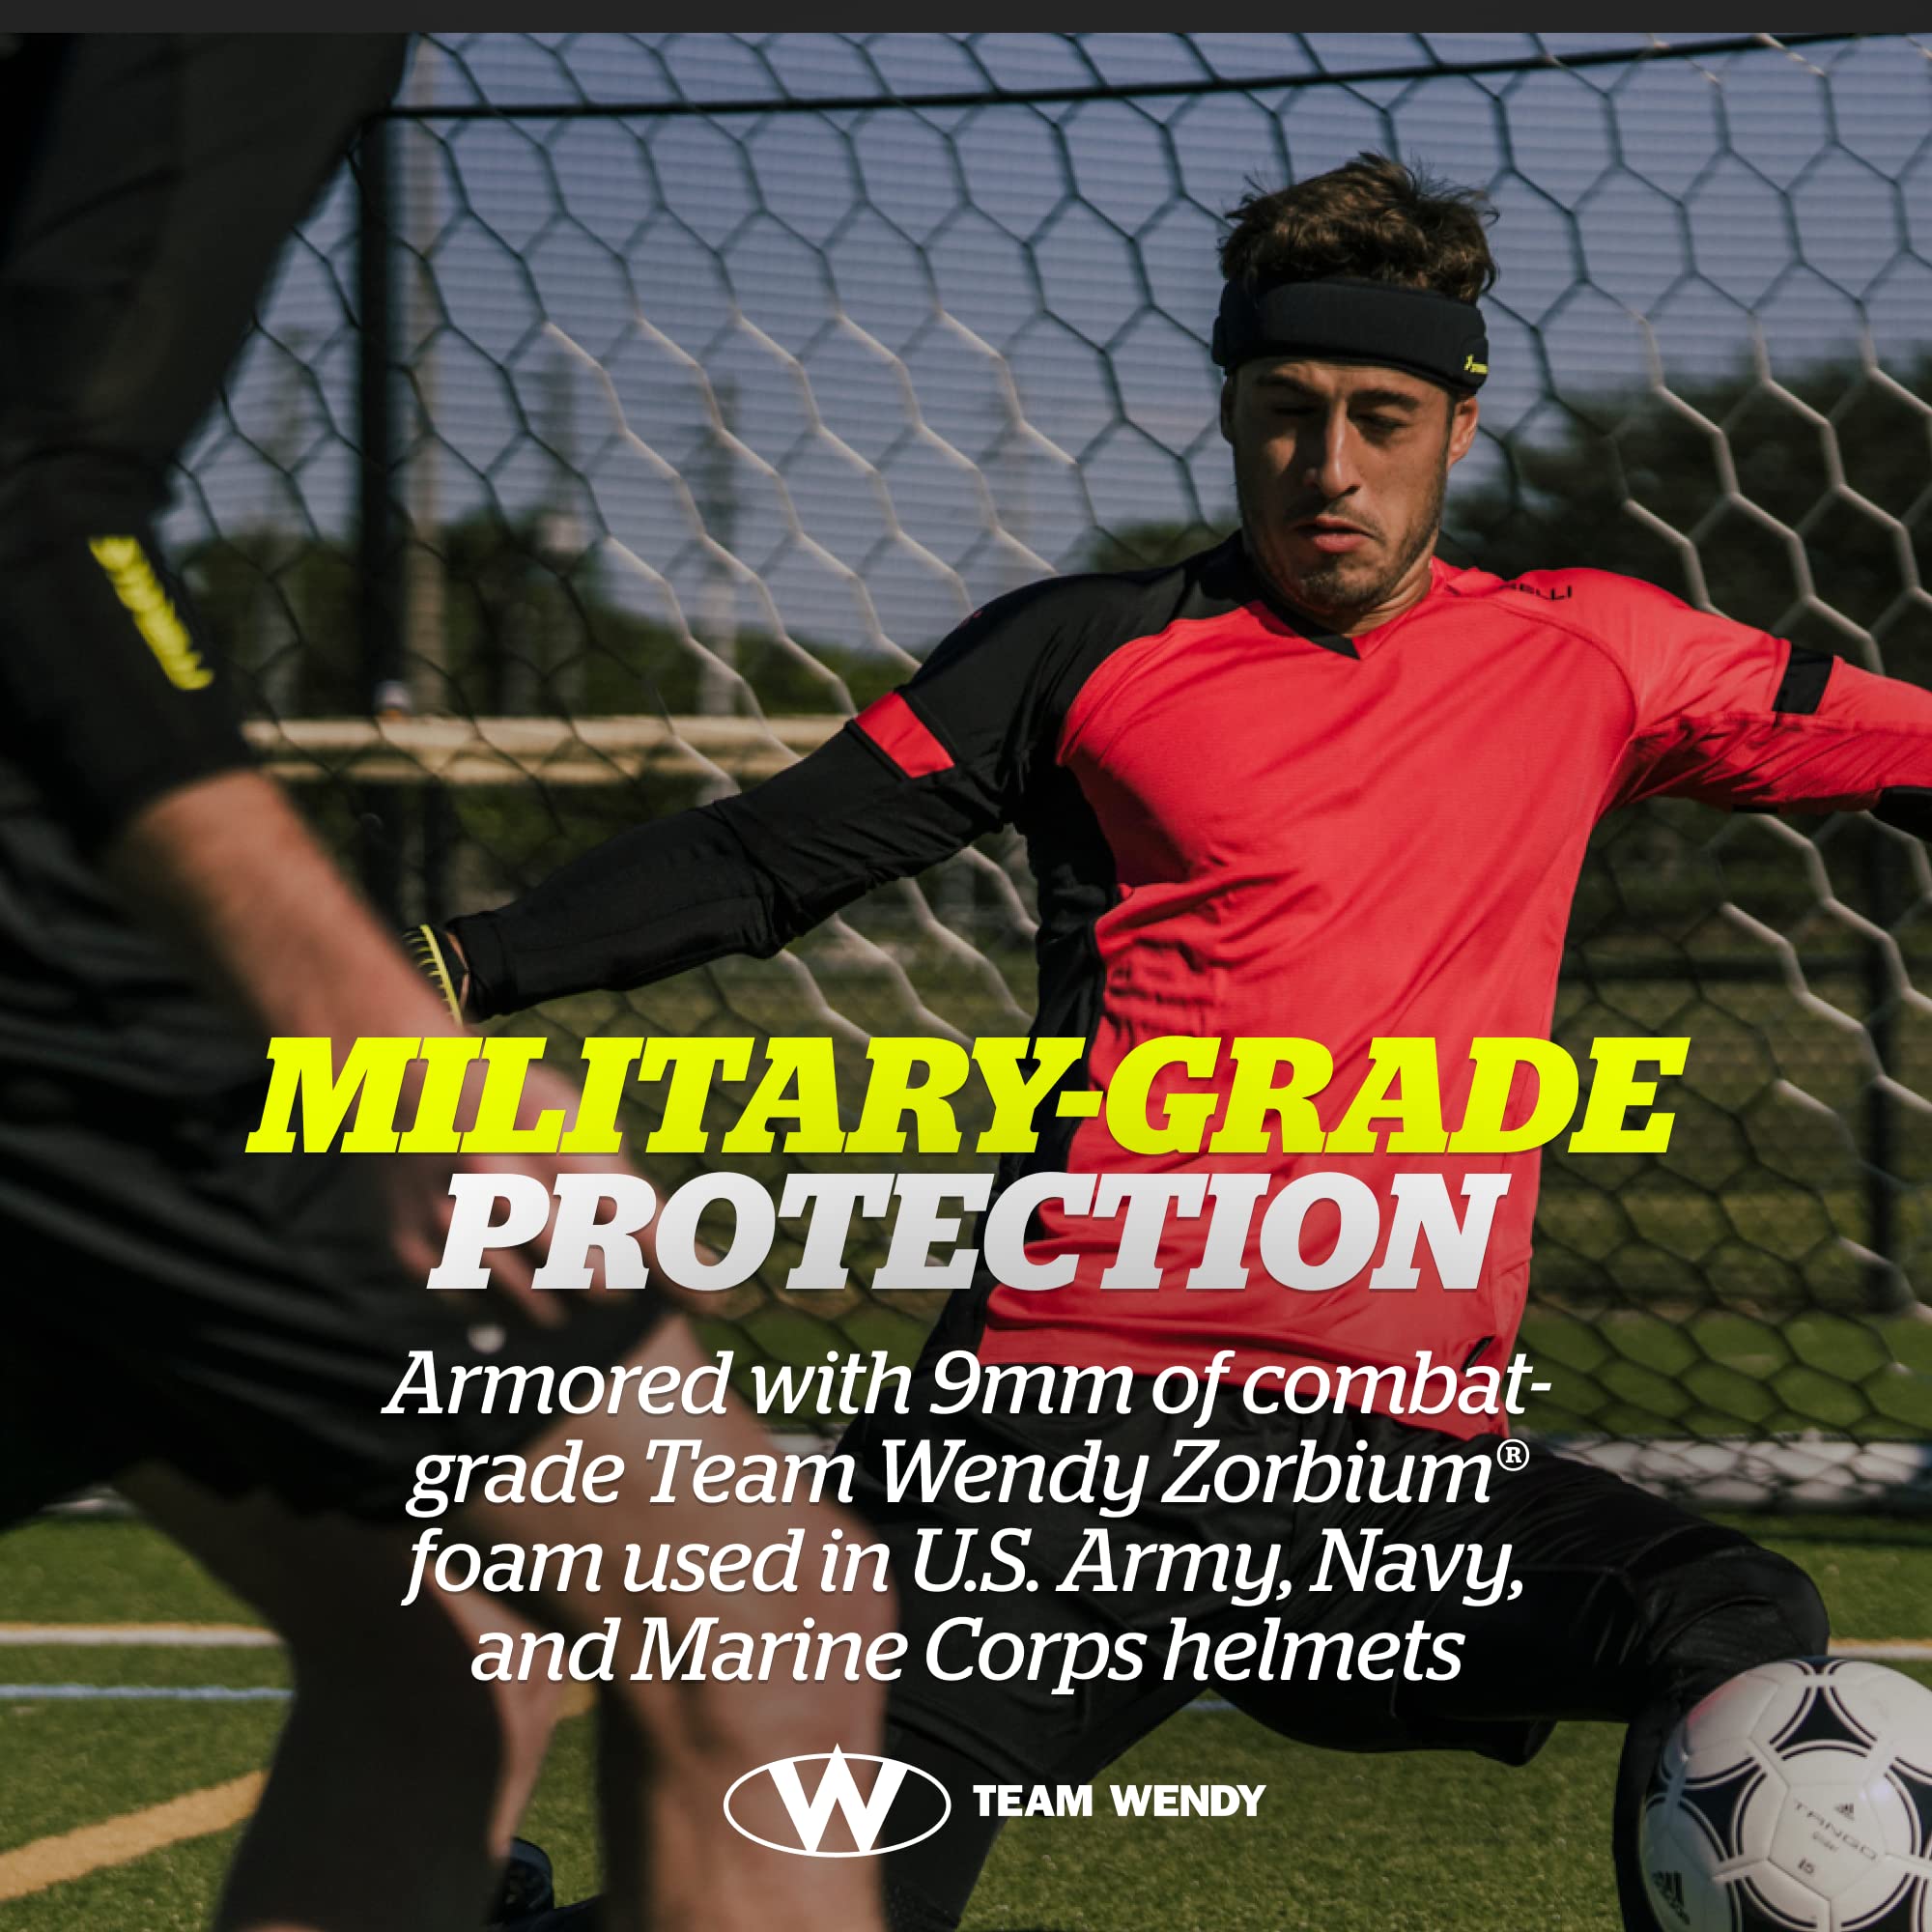 Storelli ExoShield Head Guard | Sports Headband | Protective Soccer Headgear